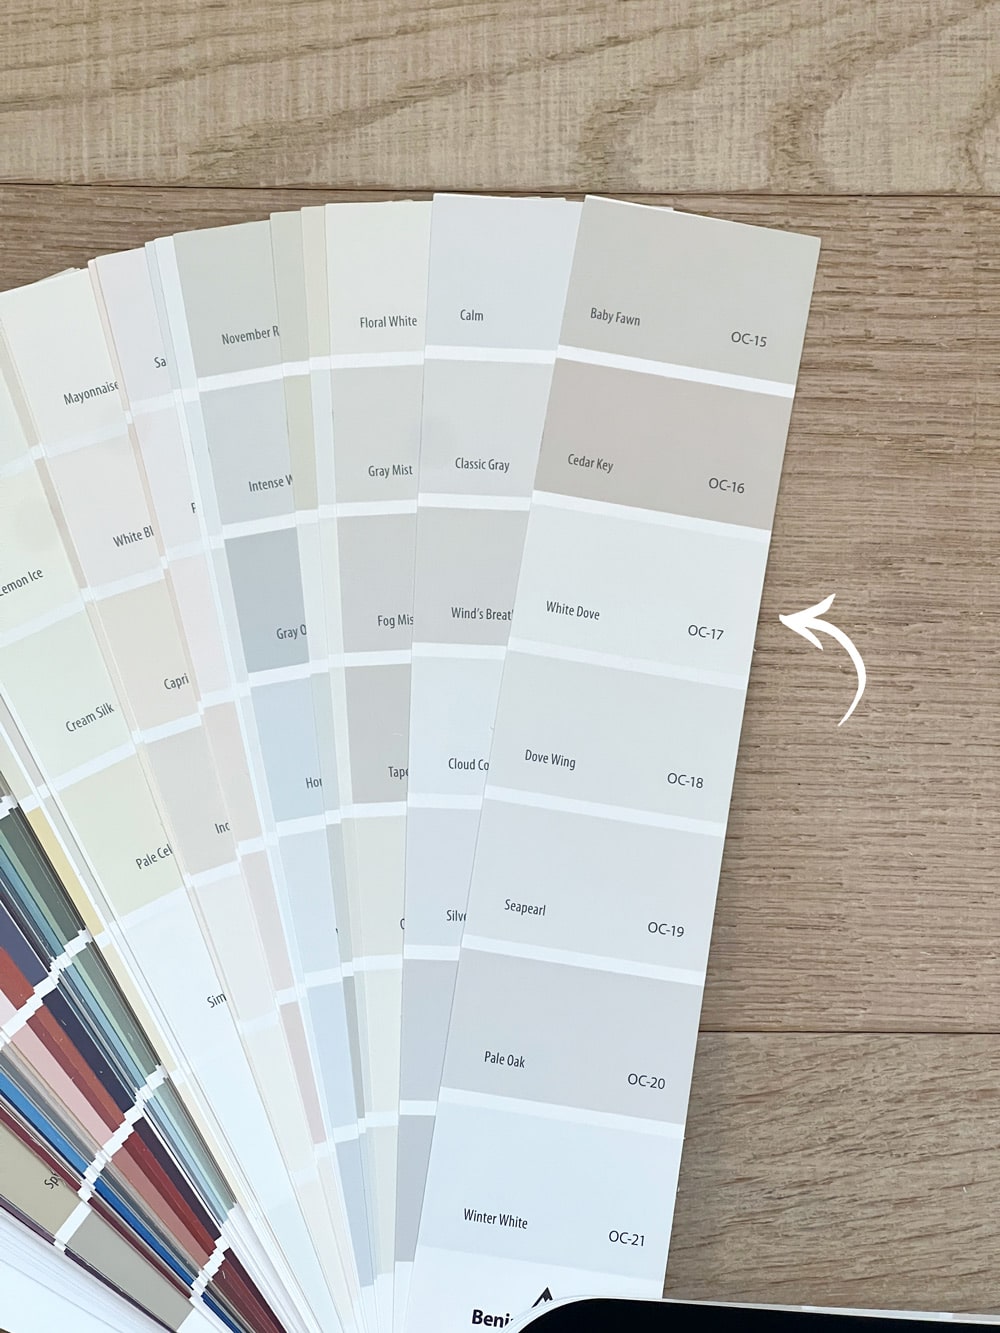 Best White Paint Colours - Guides - Vintro Luxury Paint